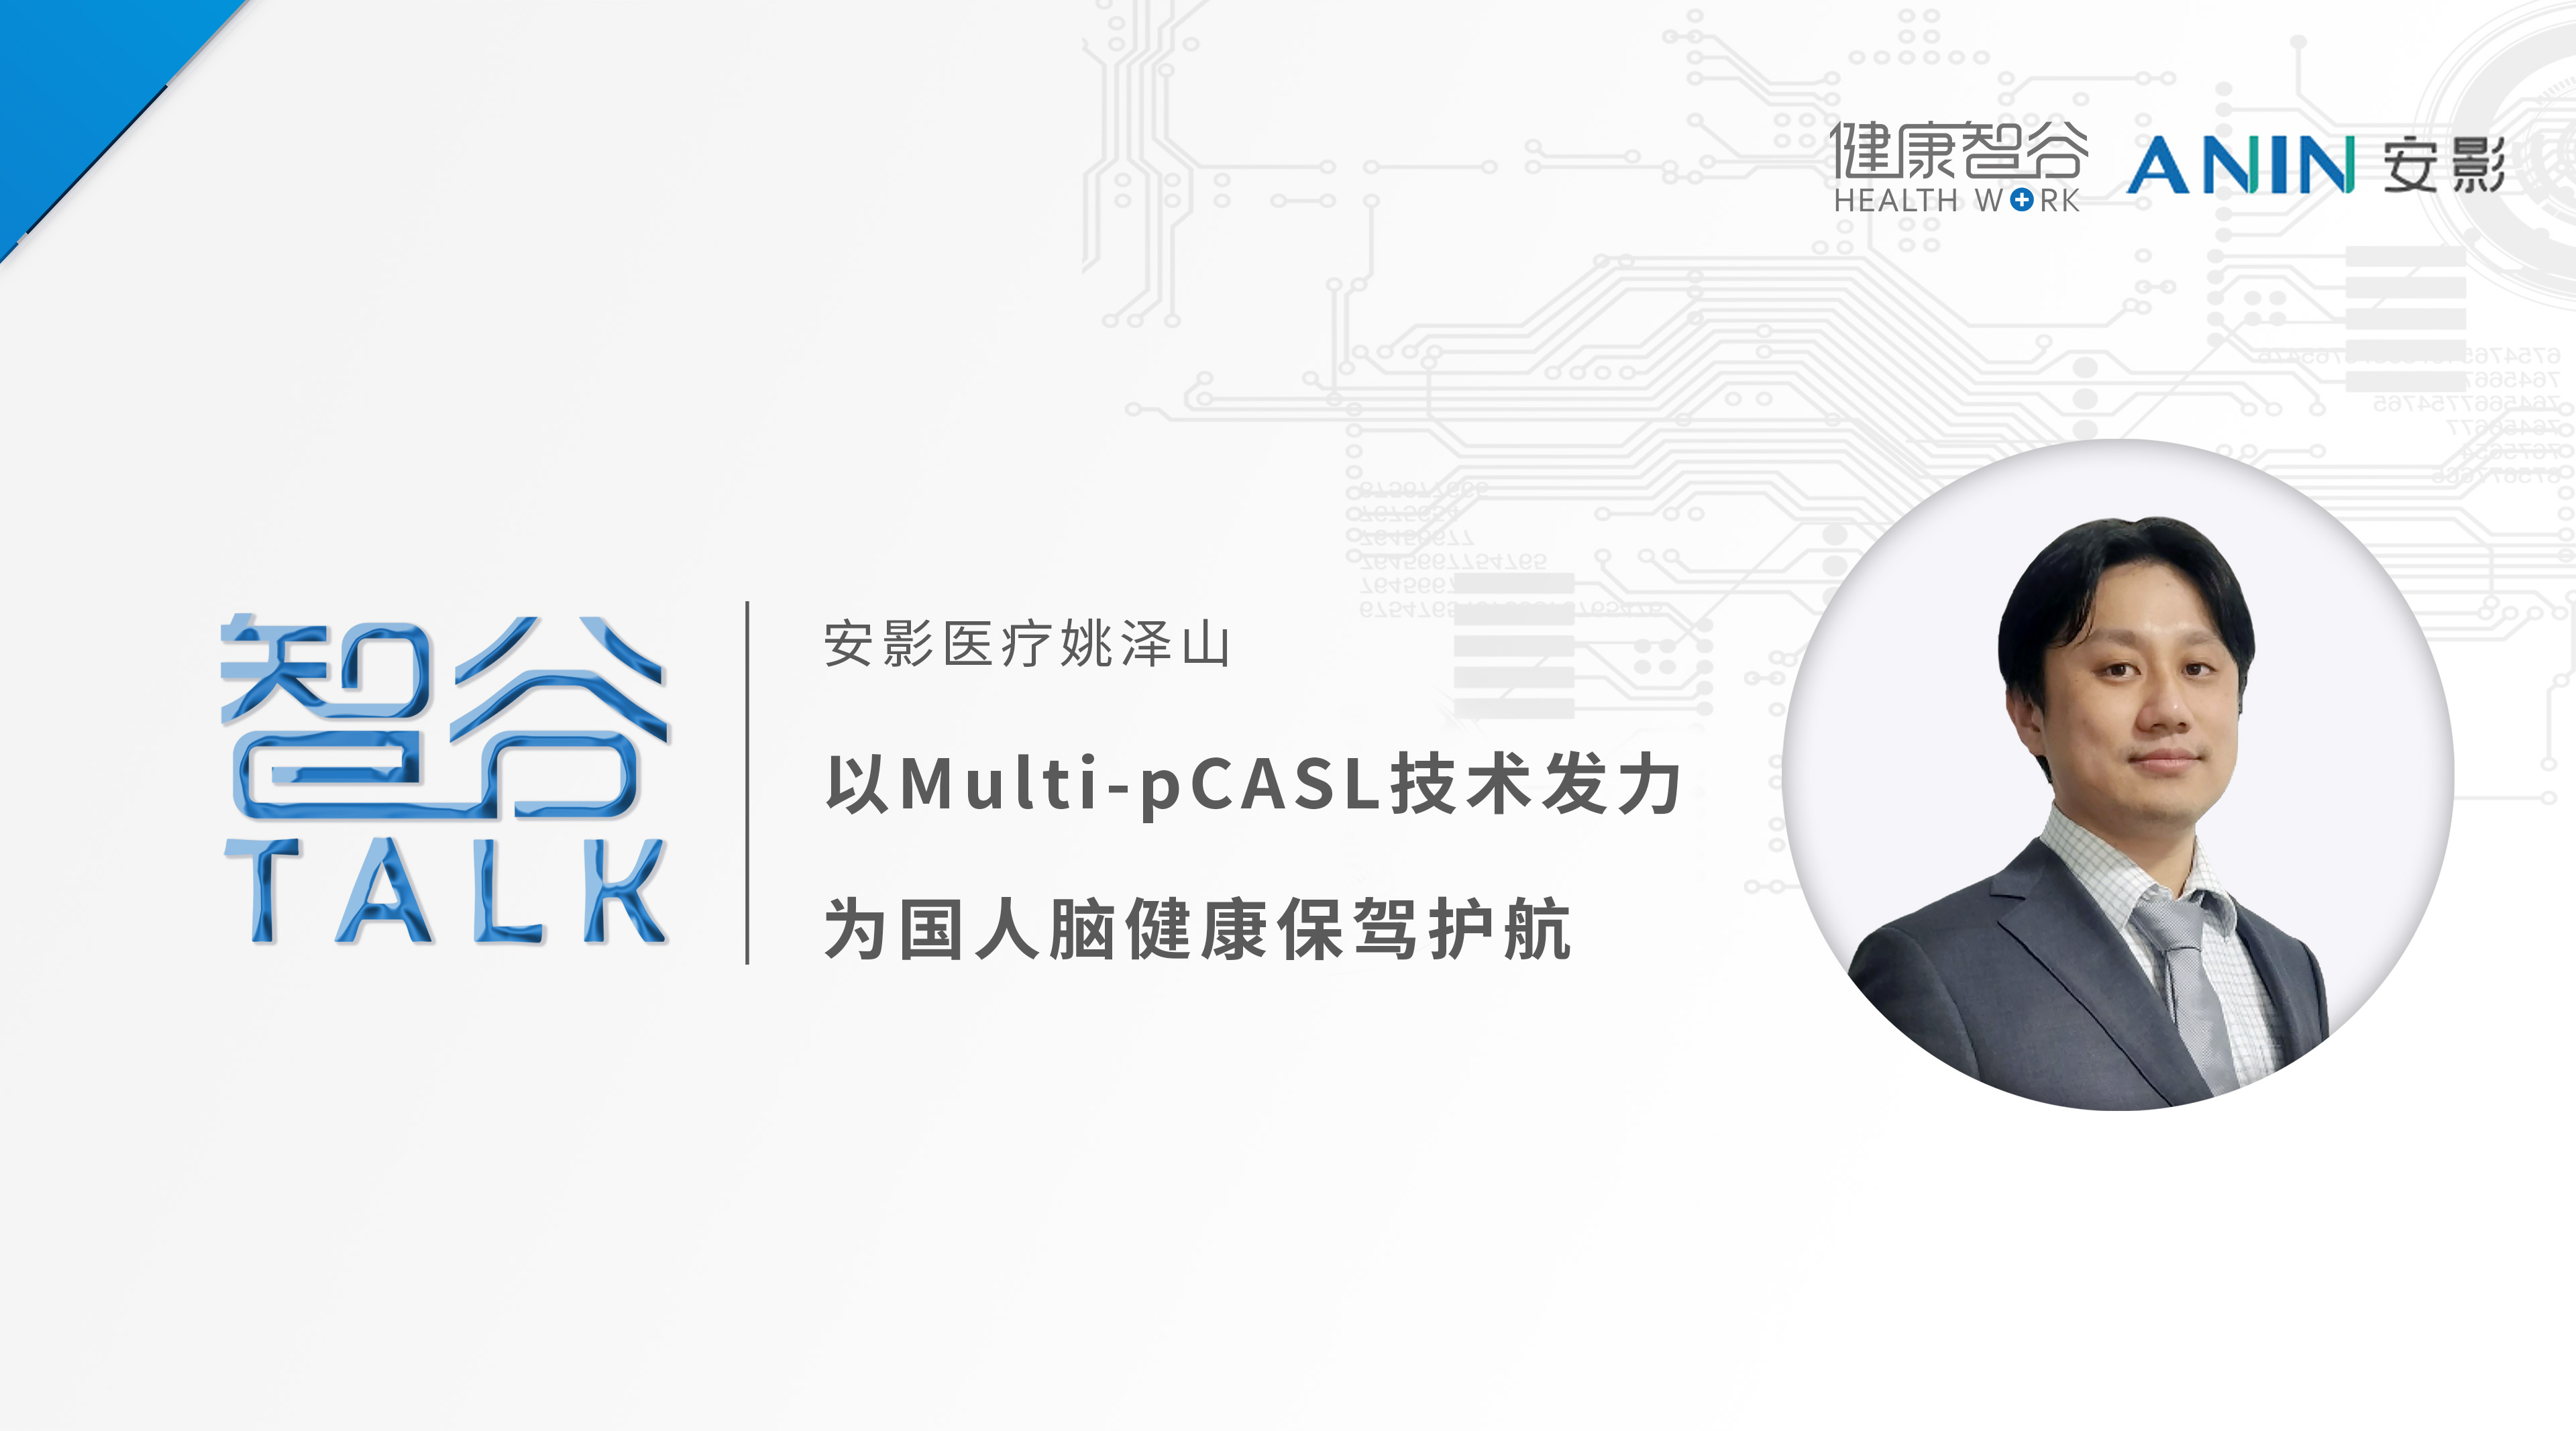 15-安影医疗姚泽山博士：以Multi-pCASL技术发力，为国人脑健康保驾护航.jpg